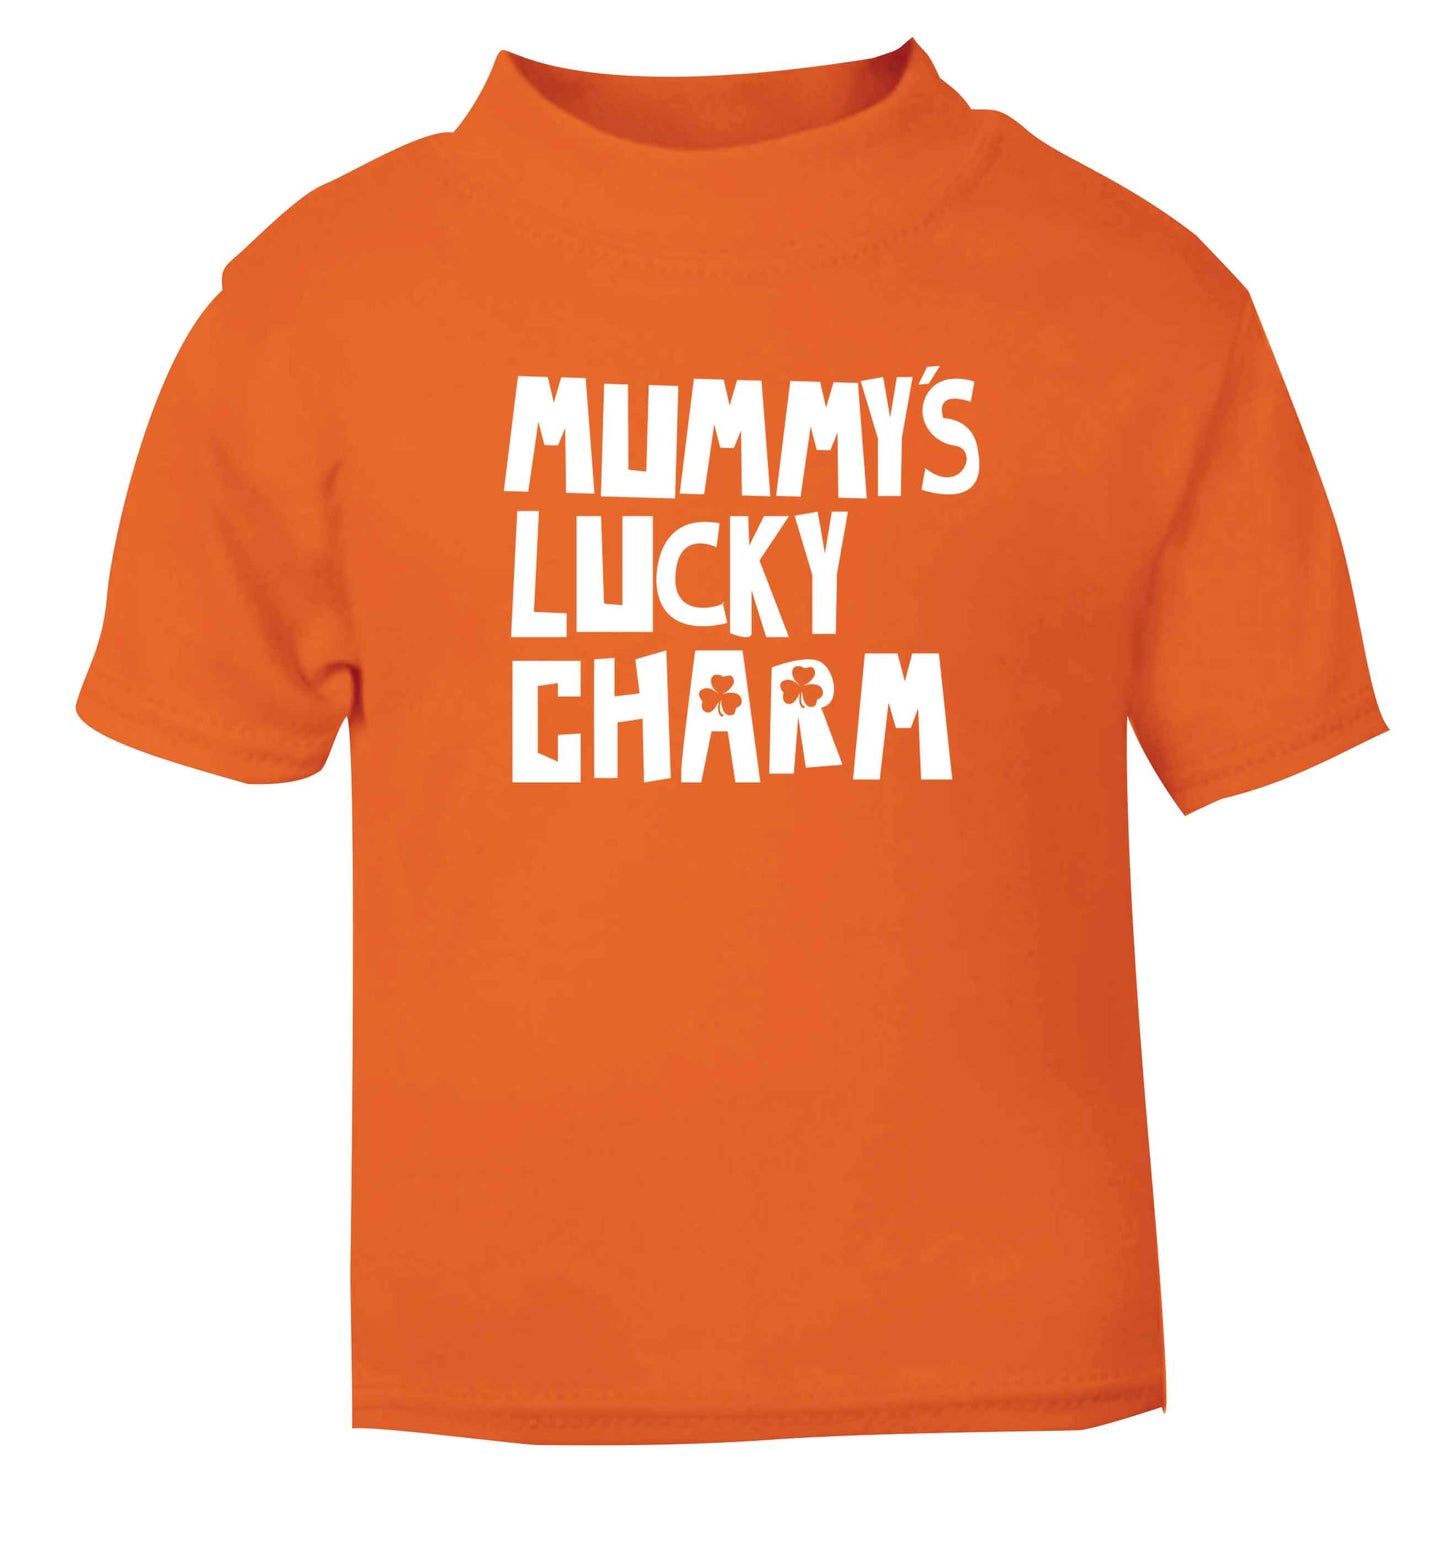 Mummy's lucky charm orange baby toddler Tshirt 2 Years